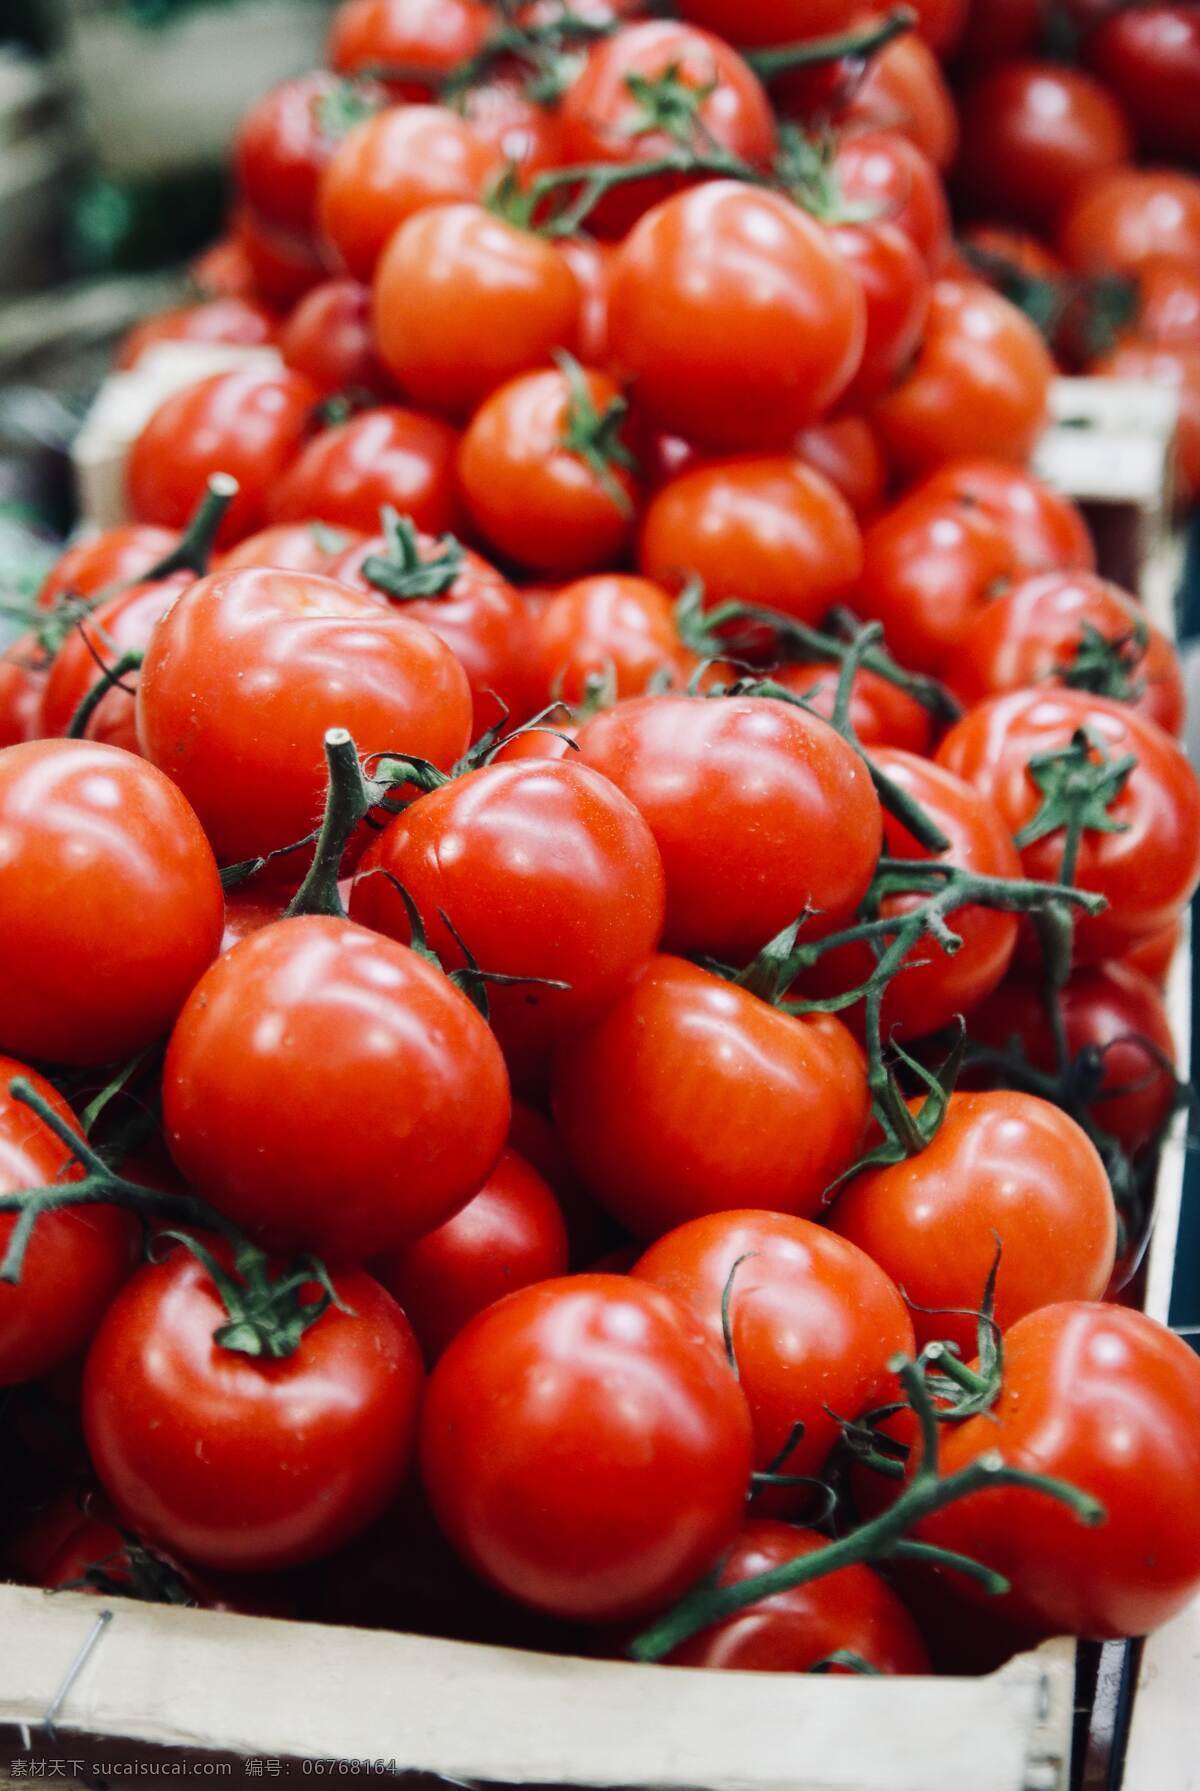 番茄 蔬菜 集市 地摊 摆摊 新鲜 水果 市场 菜场 大市场 生活百科 生活素材